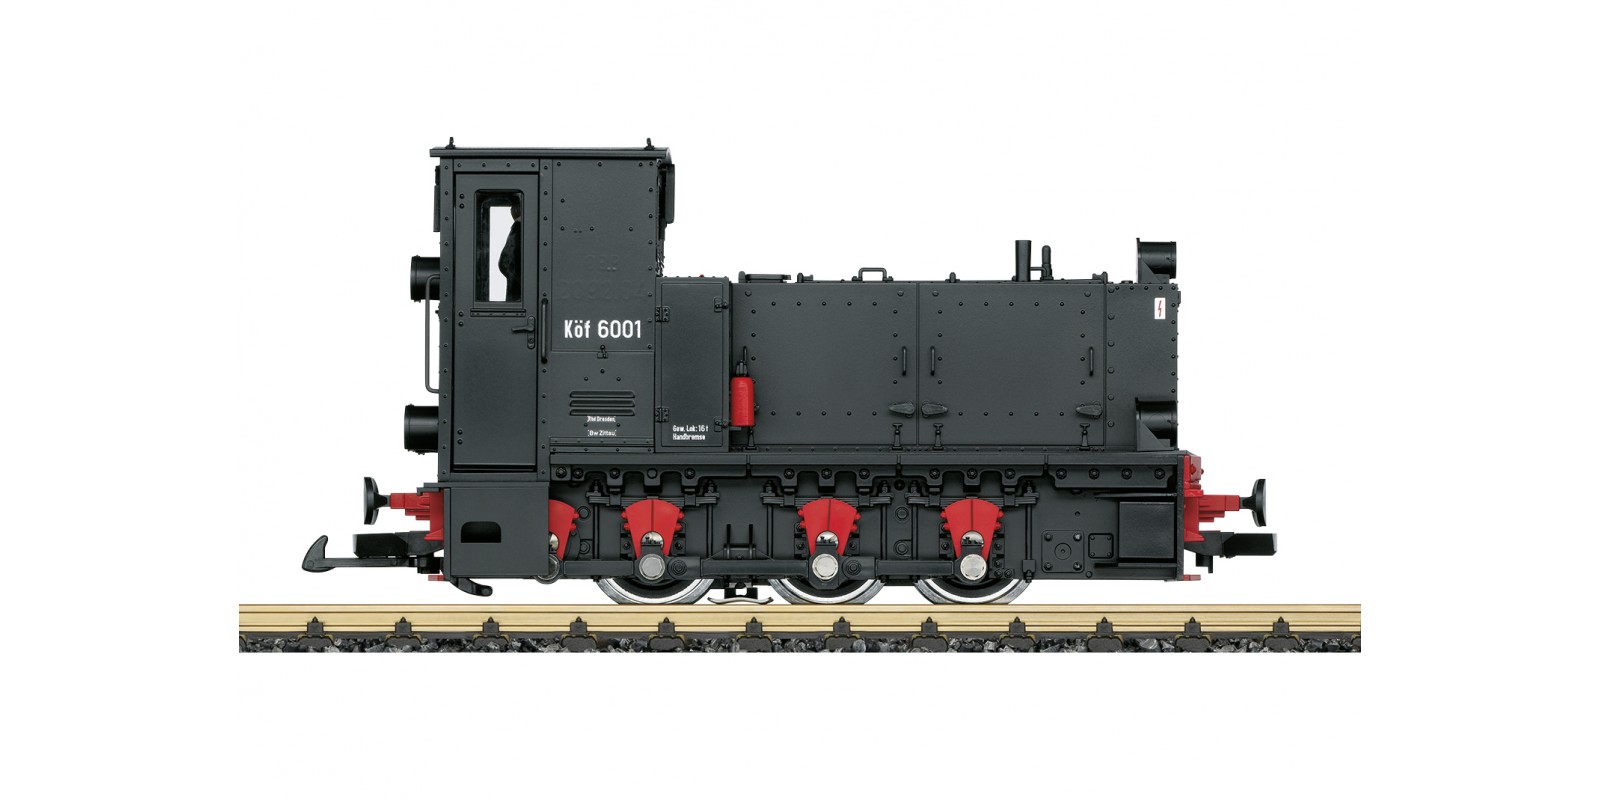 L23591 SOEG Diesel Locomotive, Road Number Köf 6001